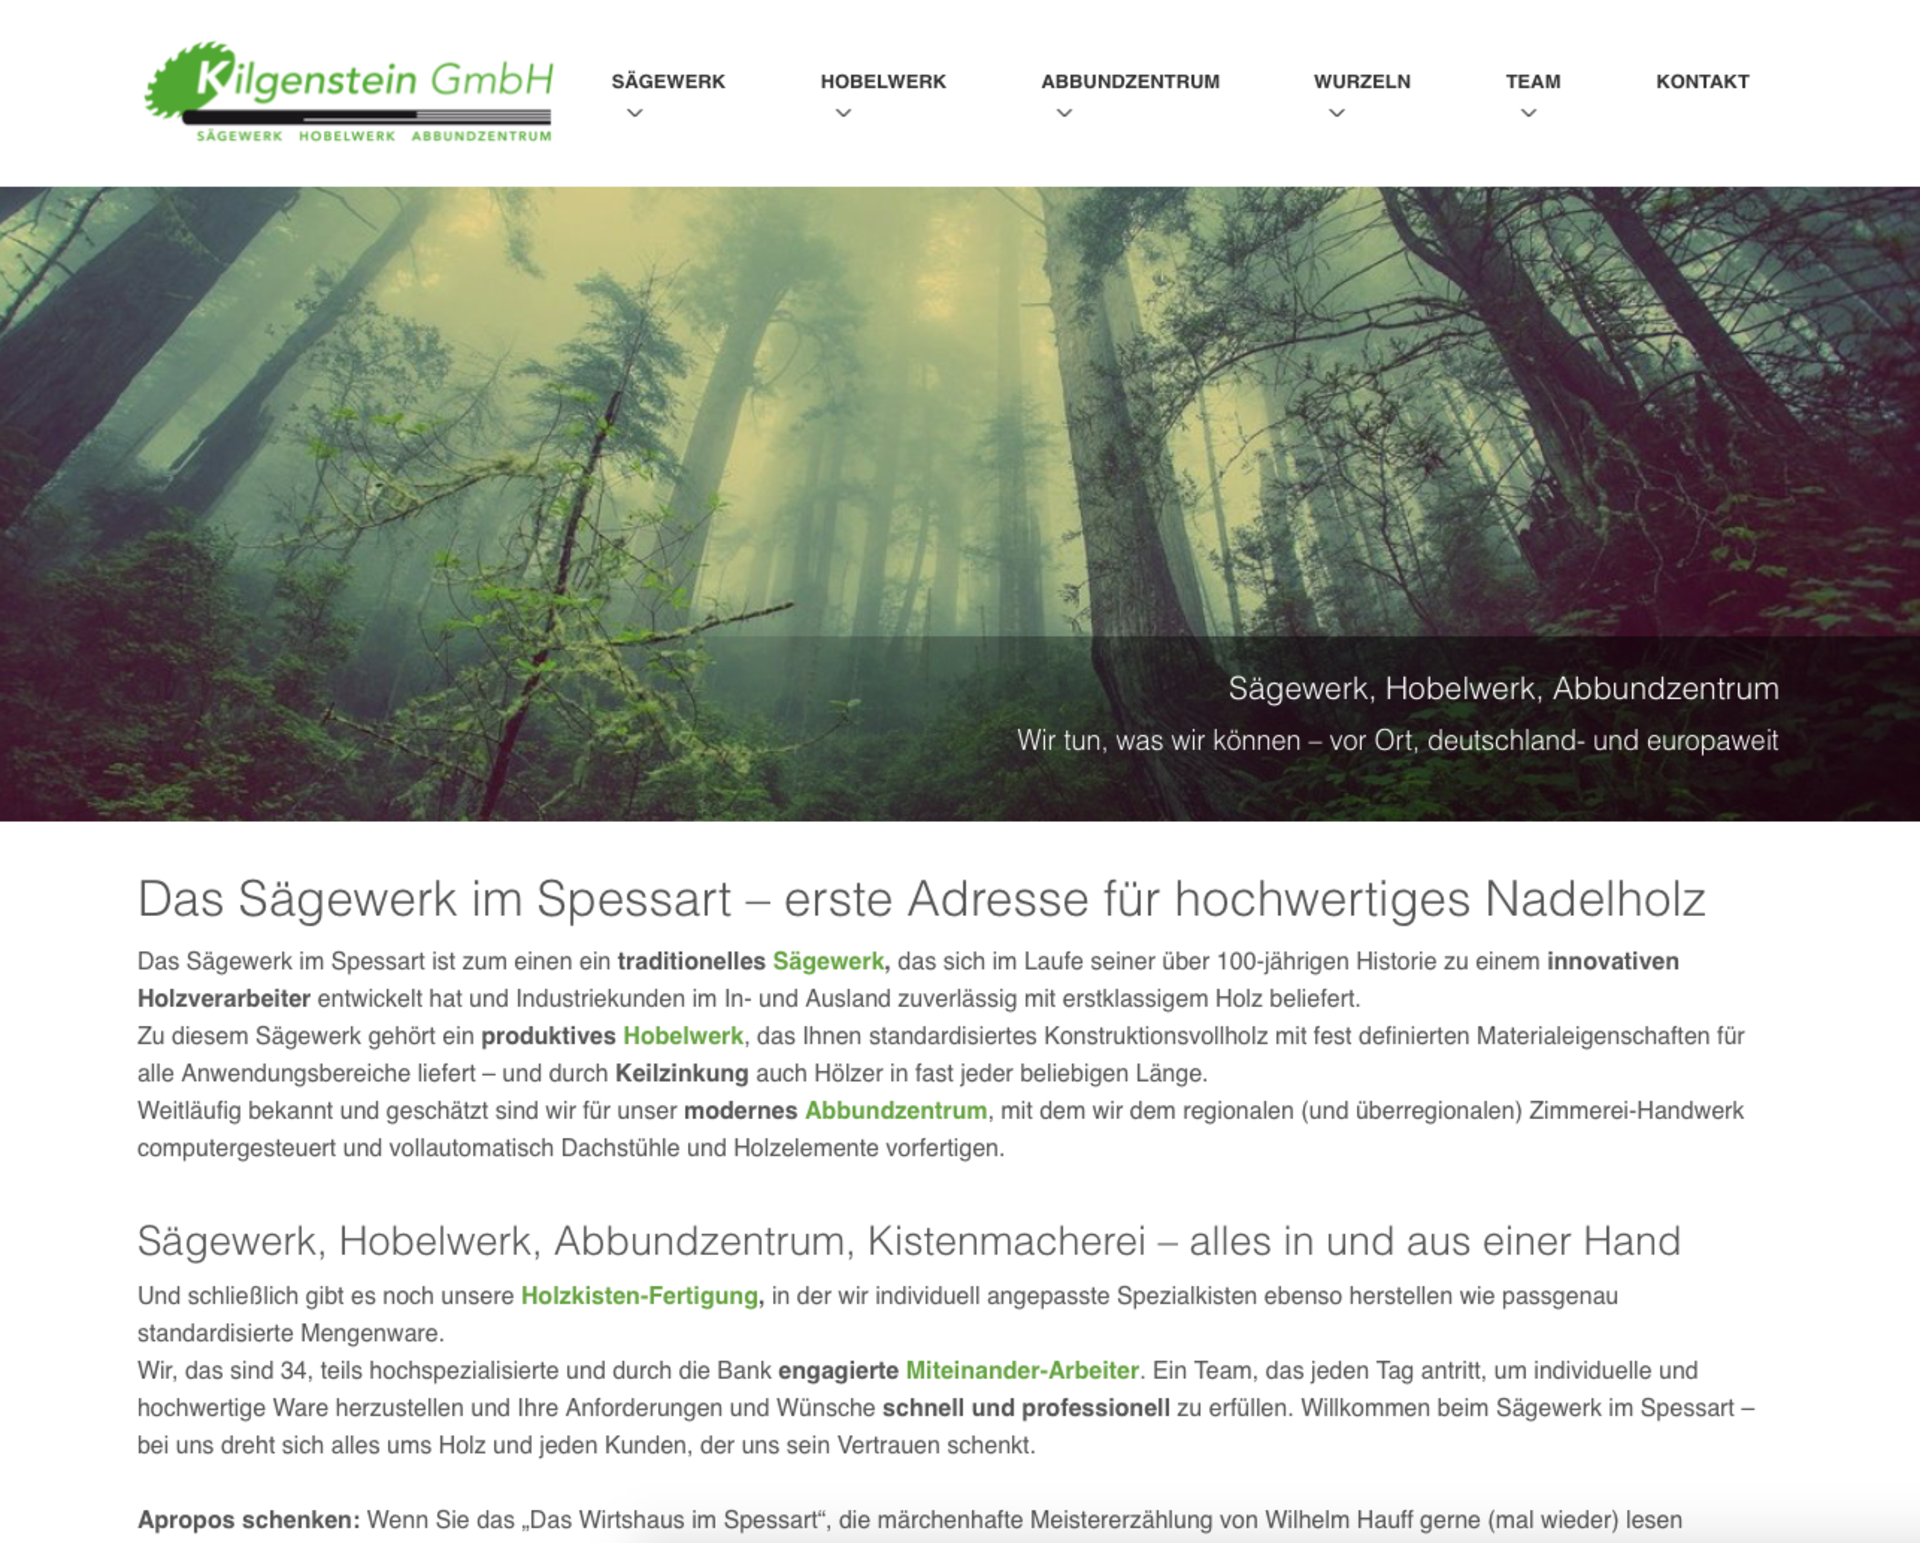 Website Kilgenstein, Sägewerk, Hobelwerk, Abbundzentrum, Kistenmacherei im Spessart